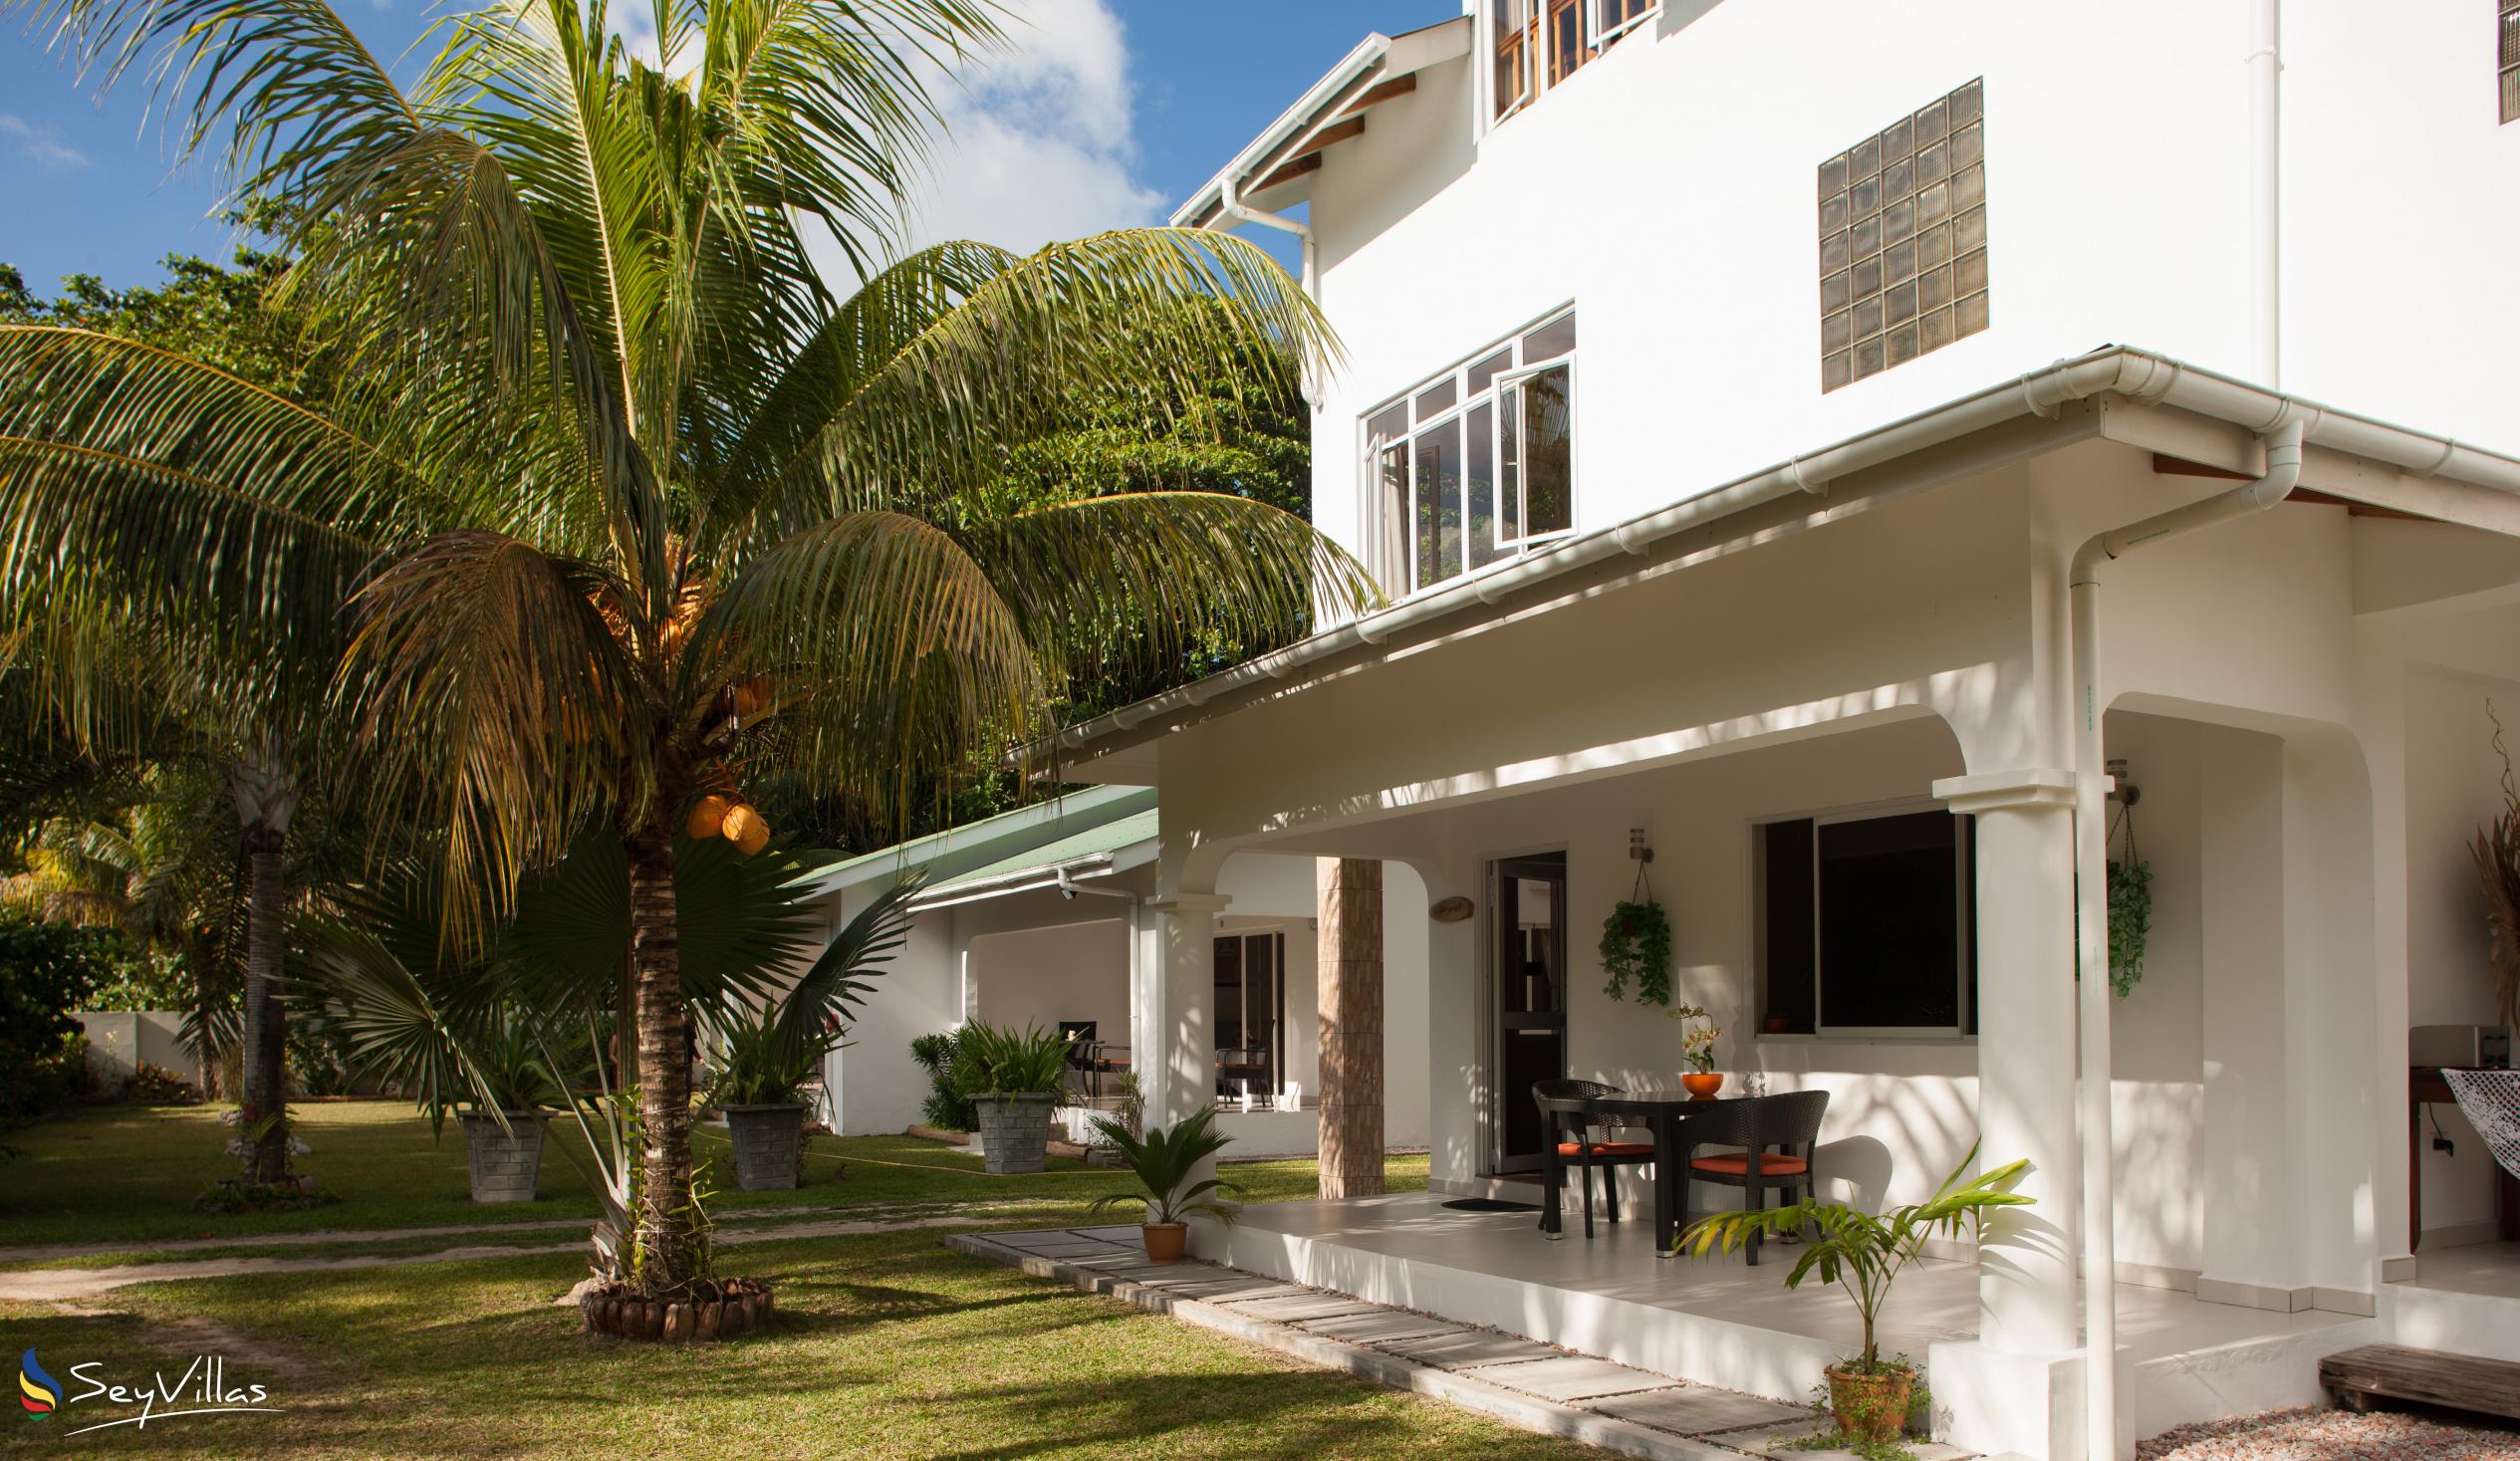 Foto 11: La Modestie Villa - Aussenbereich - Praslin (Seychellen)